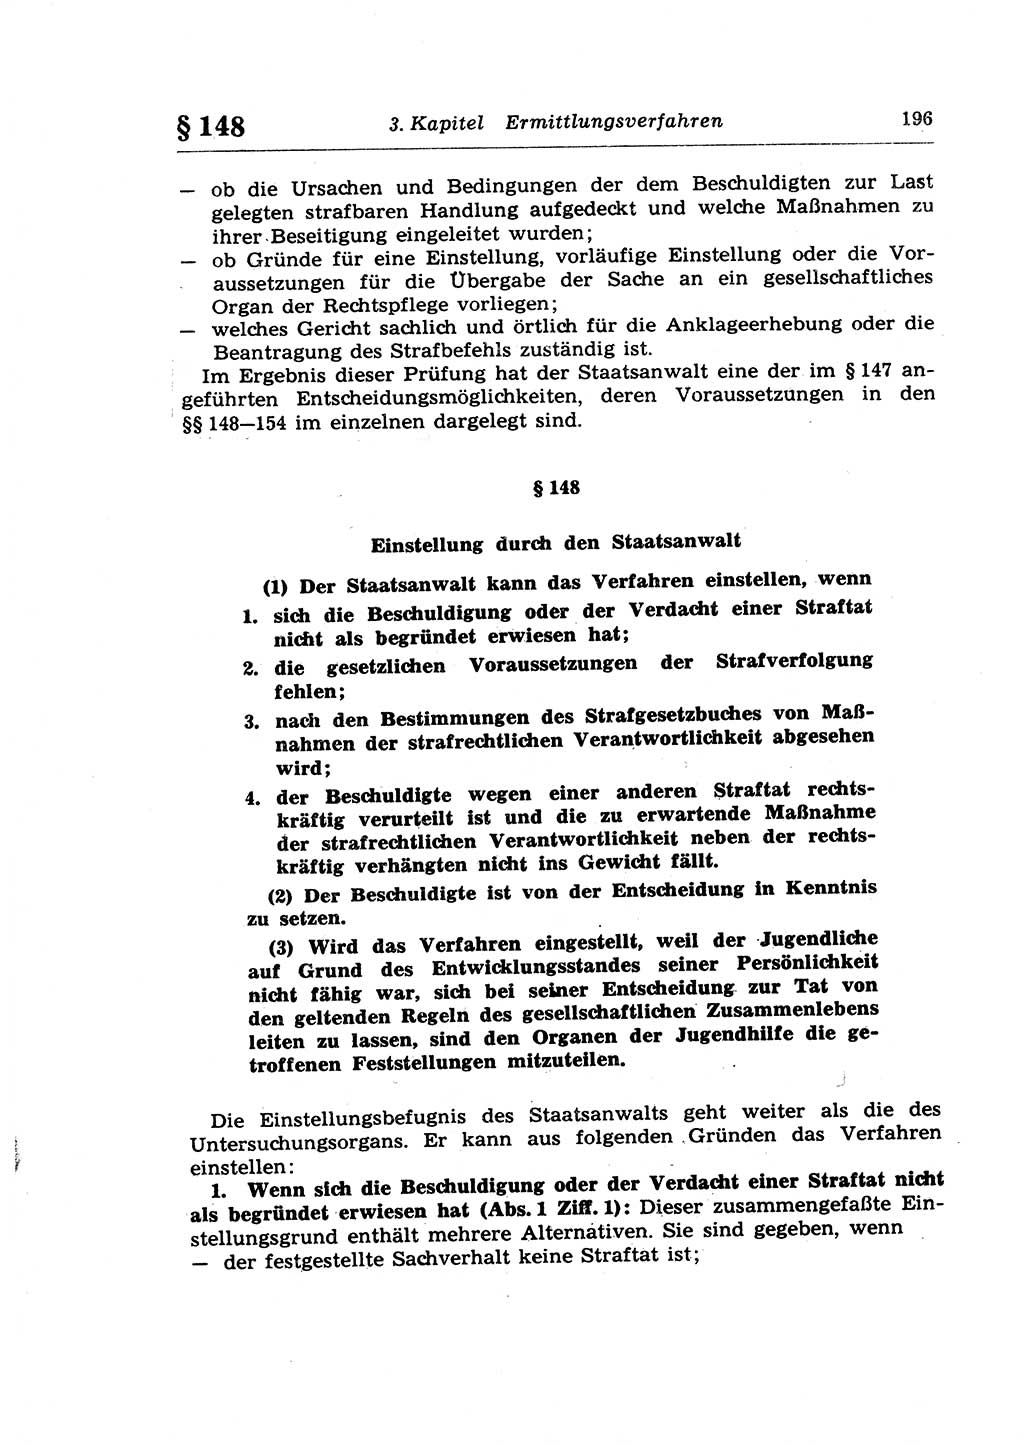 Strafprozeßrecht der DDR (Deutsche Demokratische Republik), Lehrkommentar zur Strafprozeßordnung (StPO) 1968, Seite 196 (Strafprozeßr. DDR Lehrkomm. StPO 19688, S. 196)